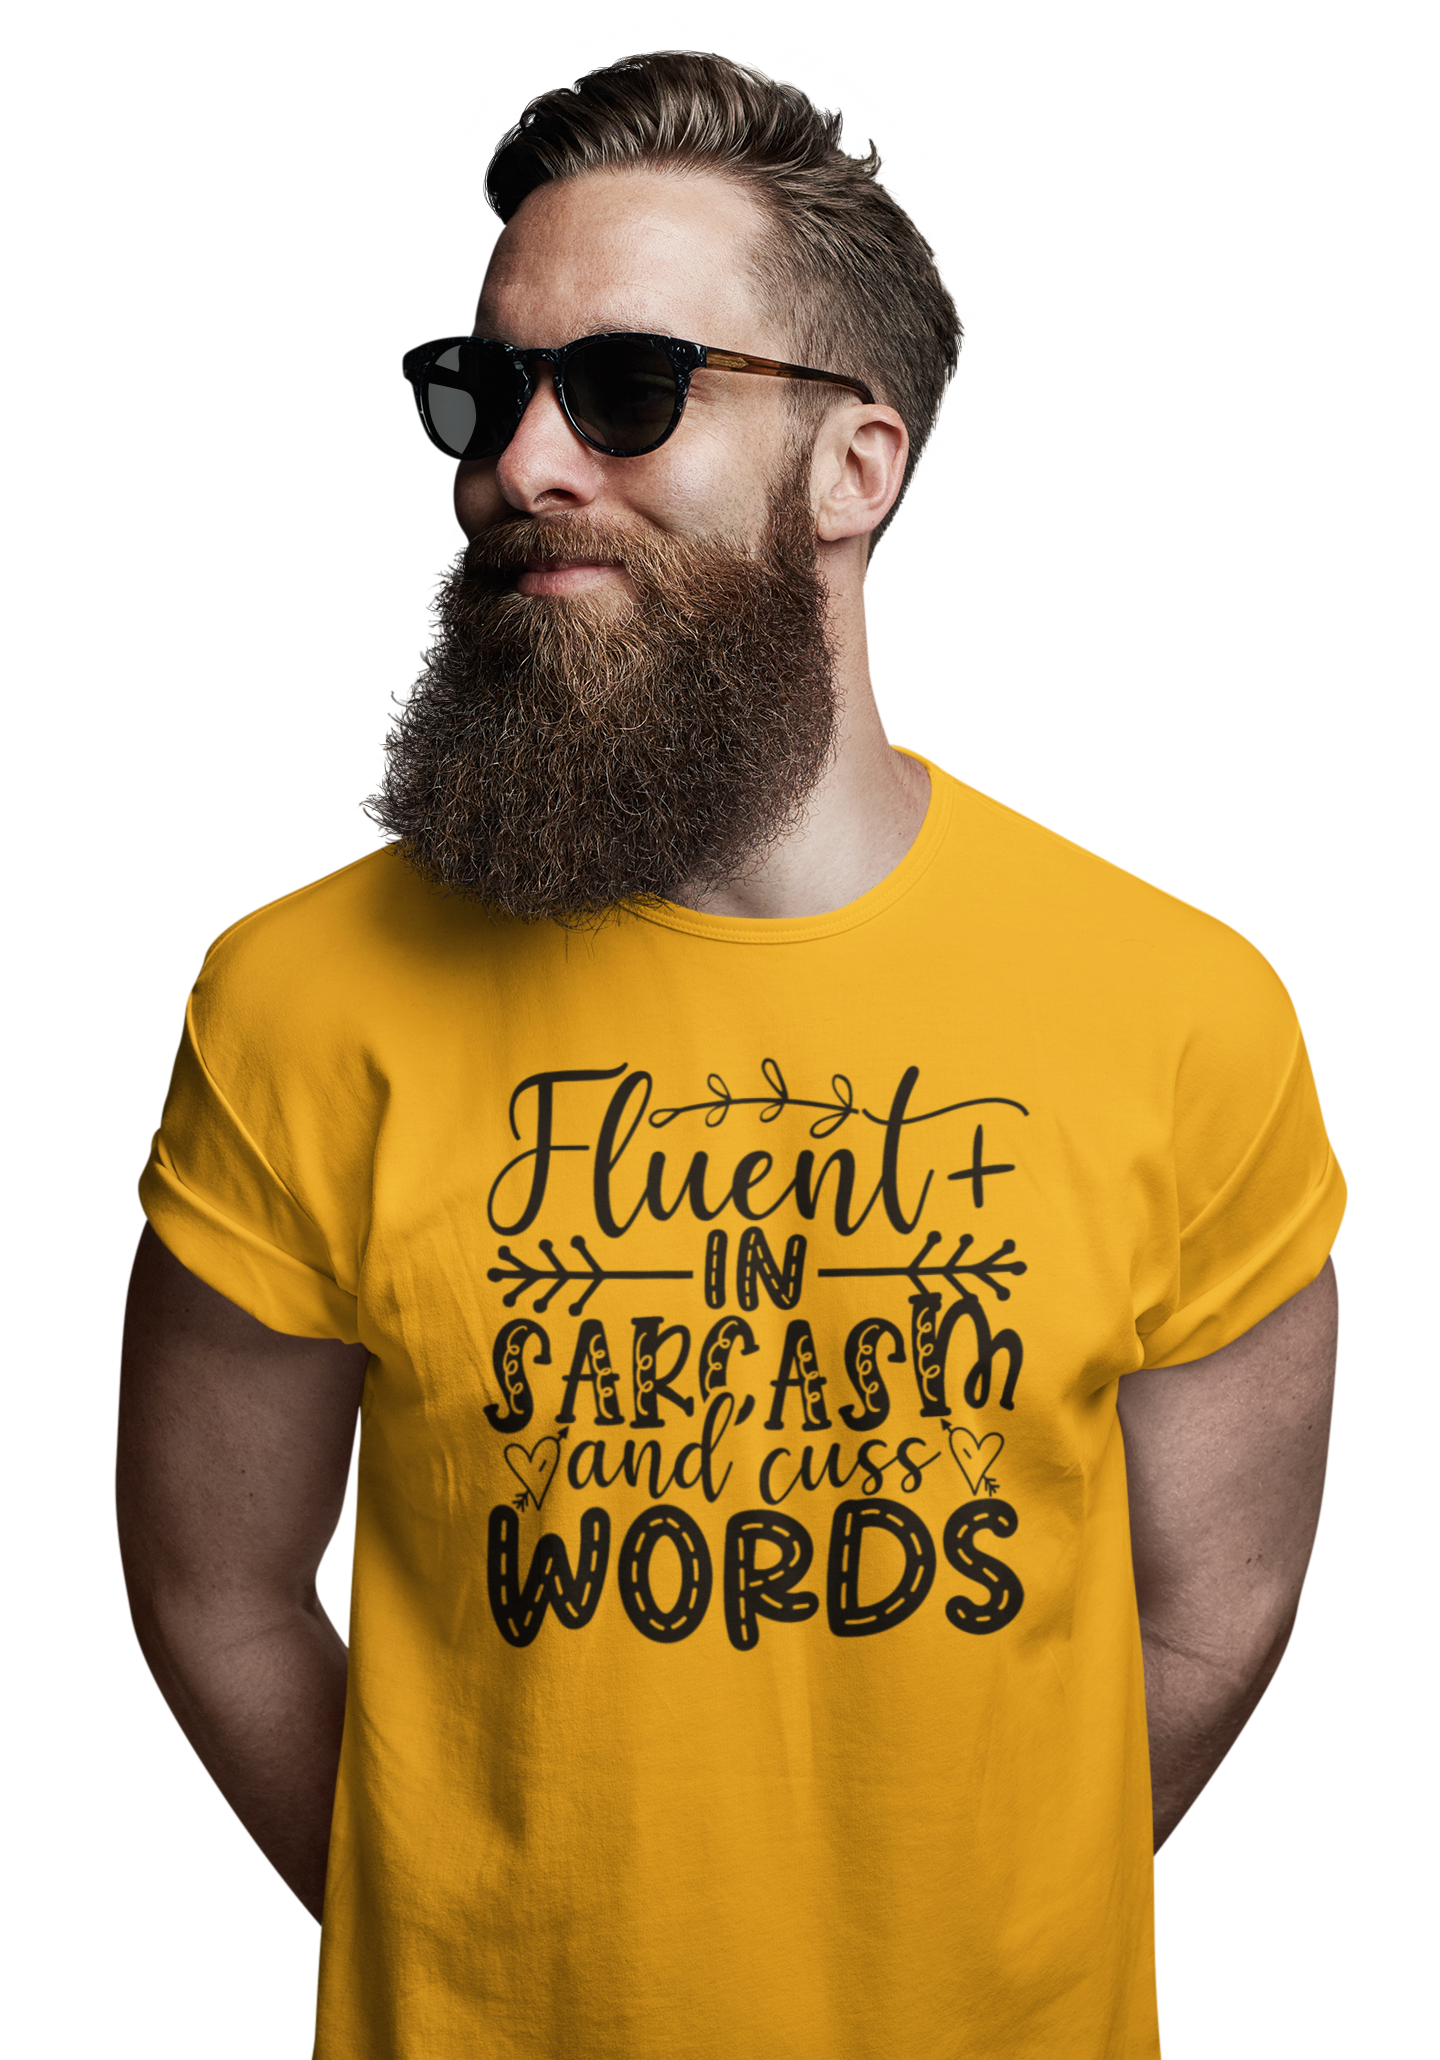 TNH - Men's Round Neck Tshirt - Fluent in Sarcasm